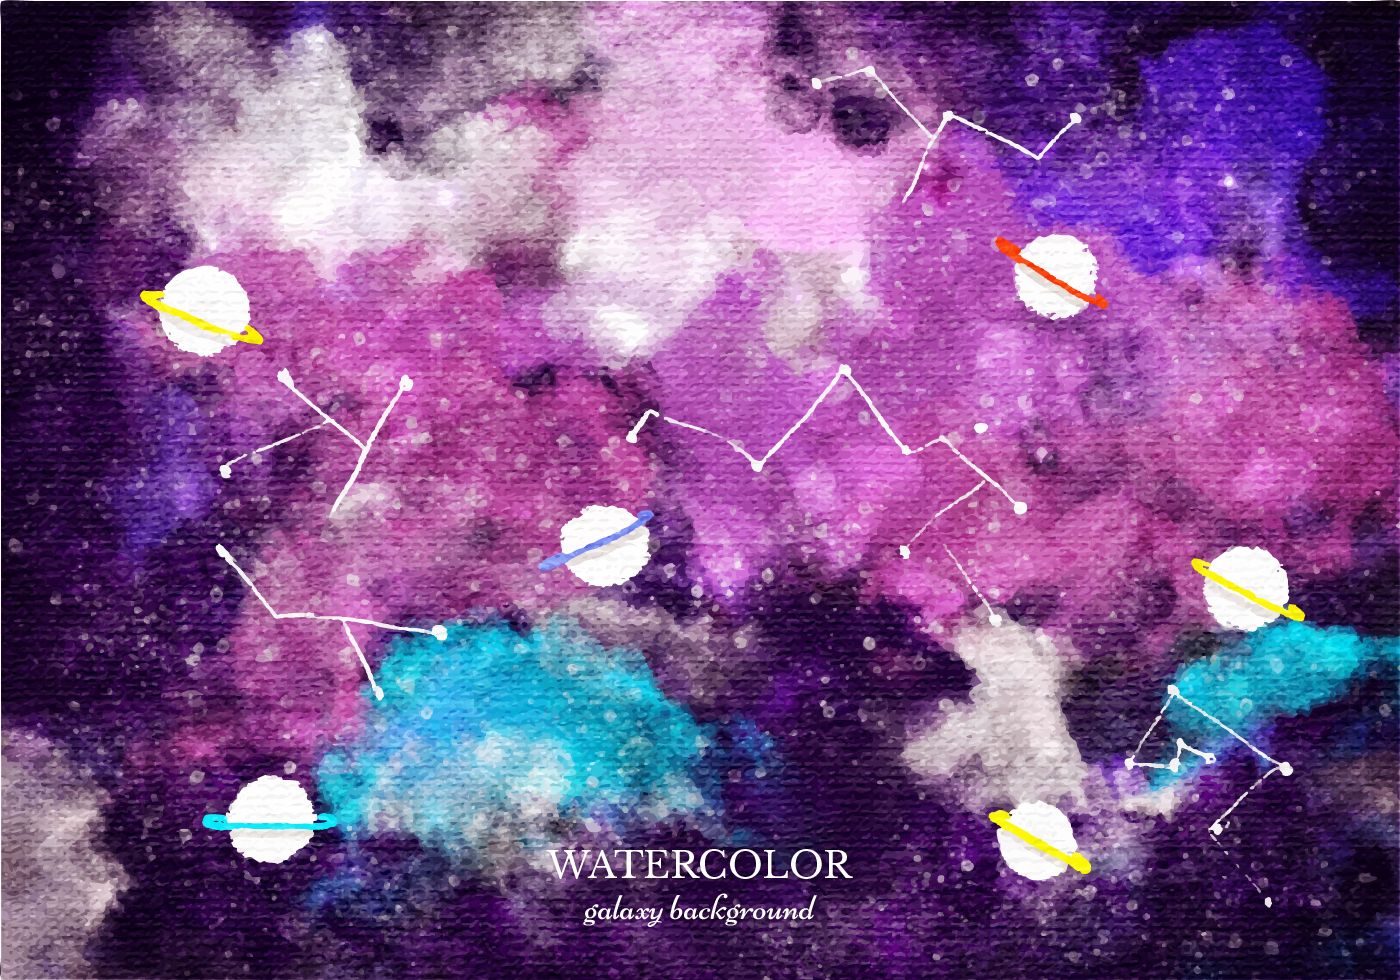 Free Vector Watercolor Galaxy Background Download Free Vectors